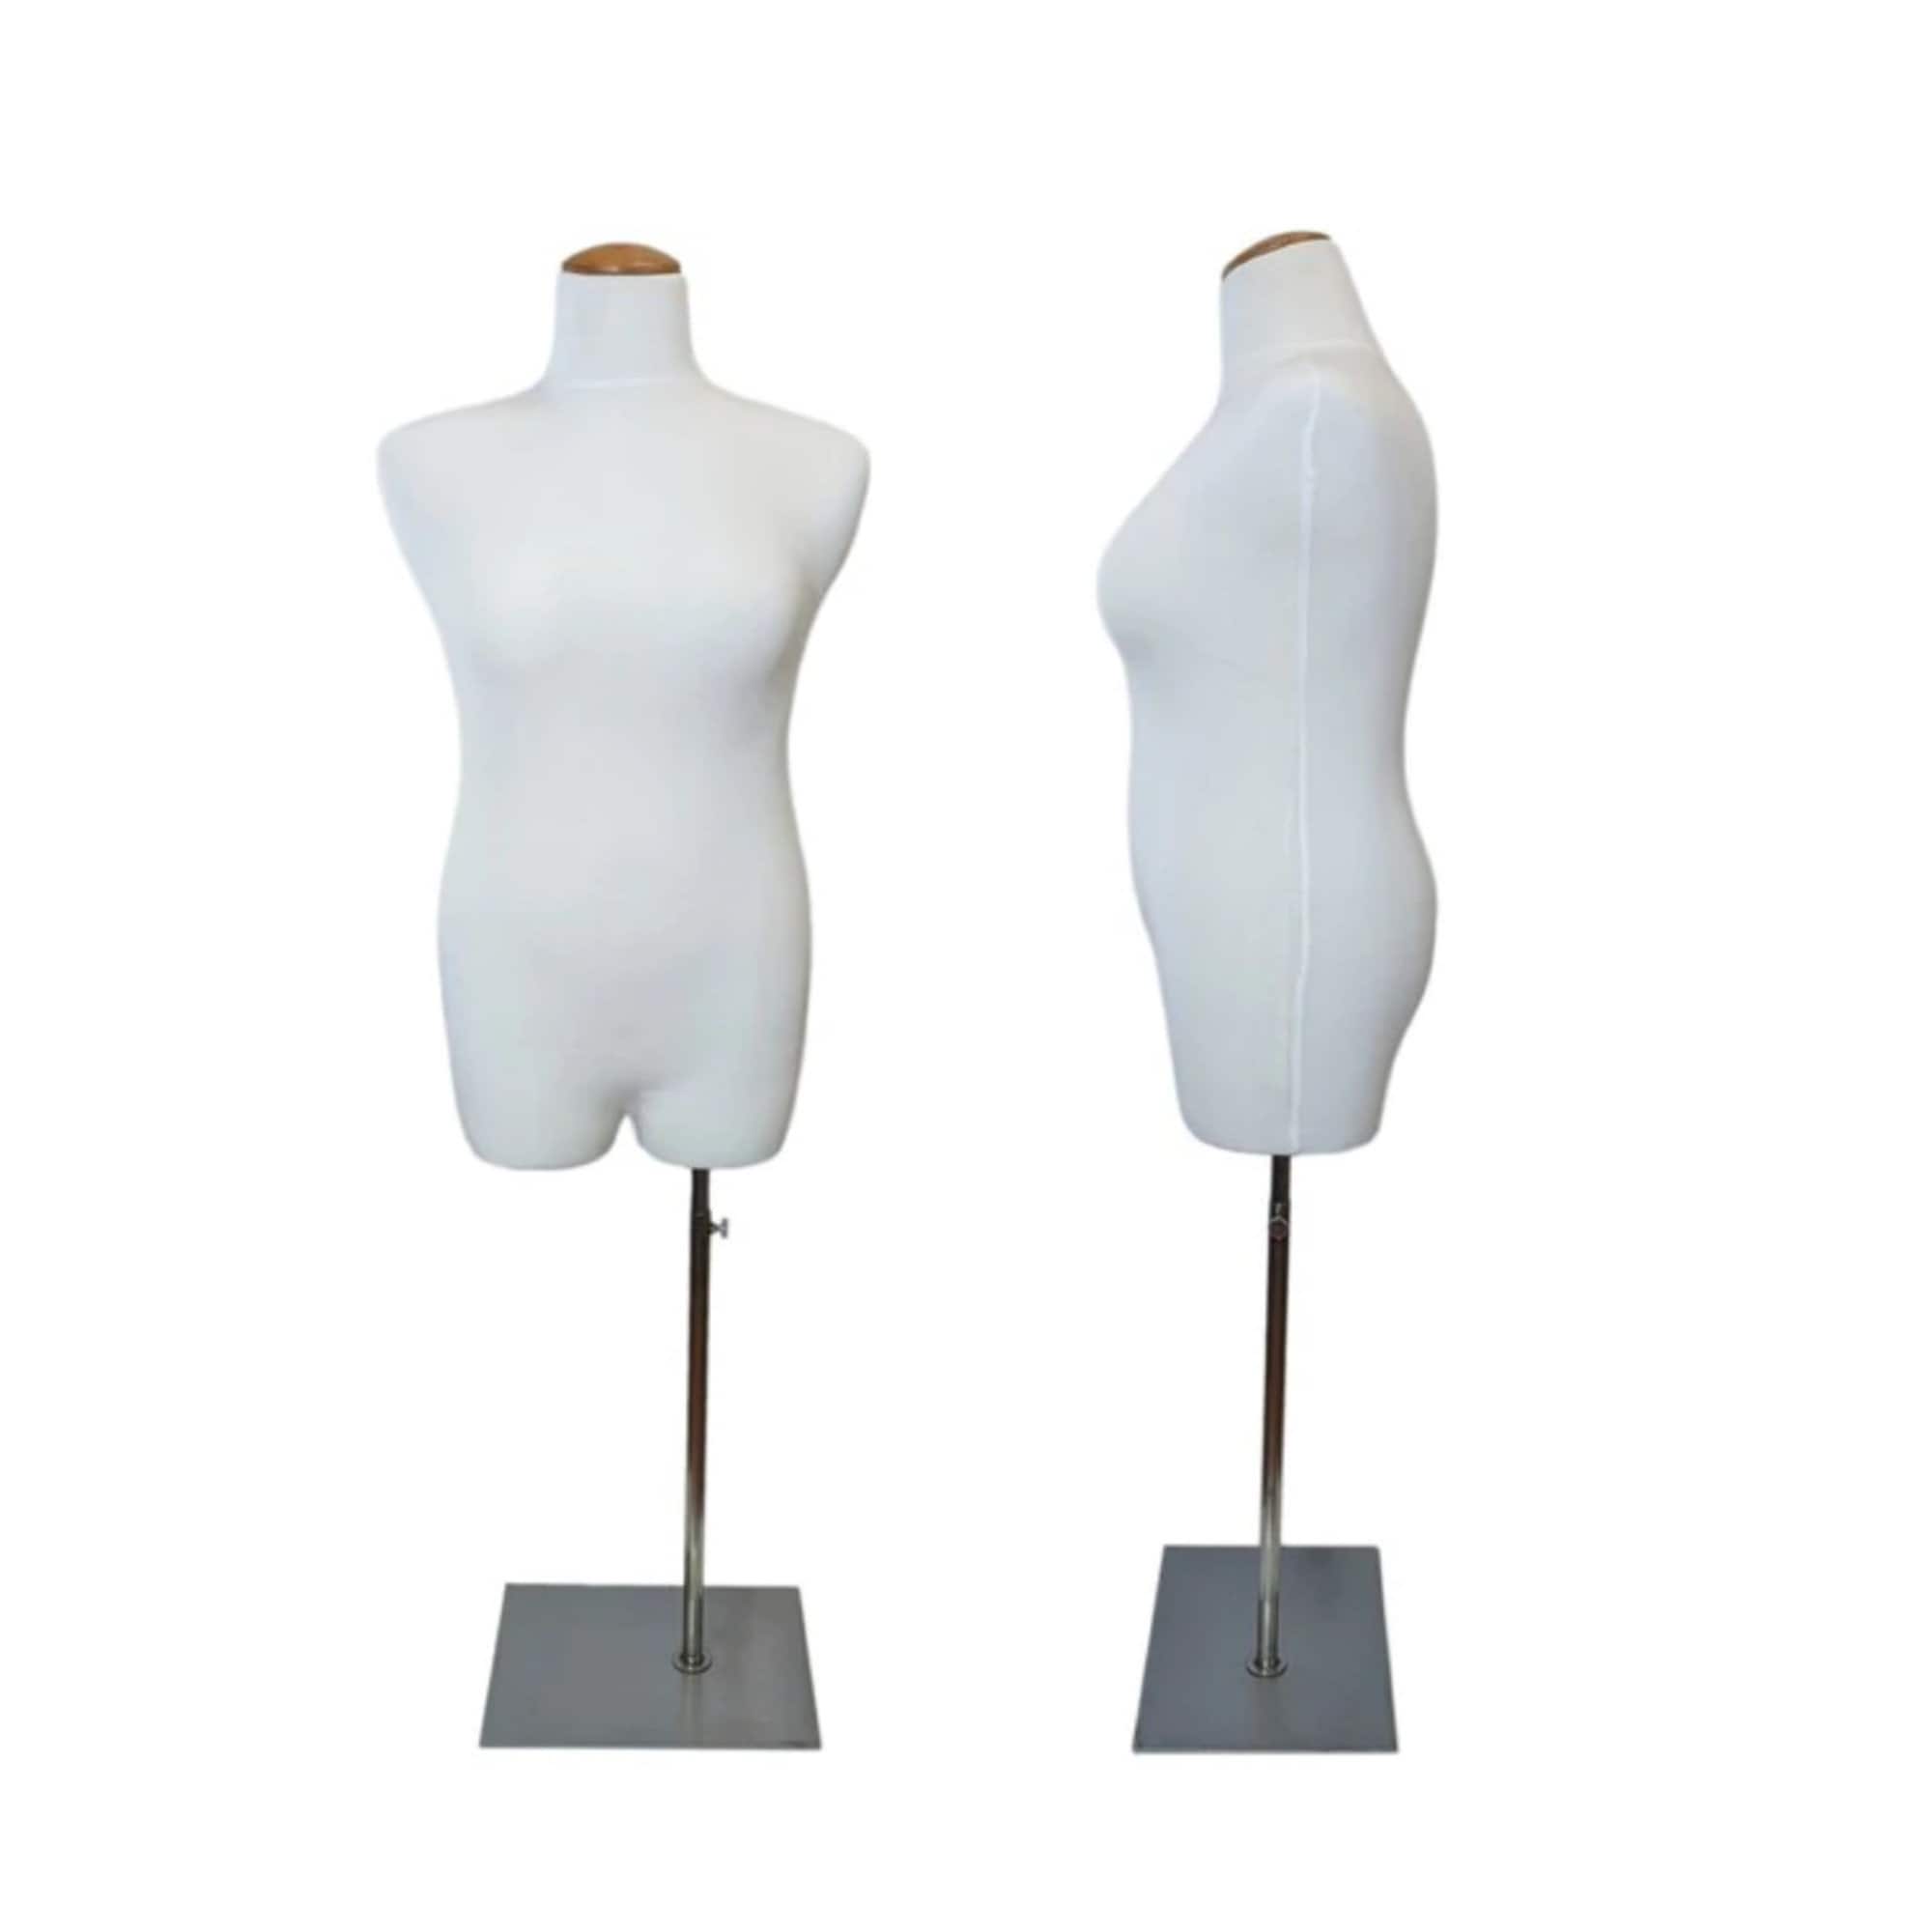 DL268 Half Scale Dress Form Plus Size 16 Woman Mannequin 